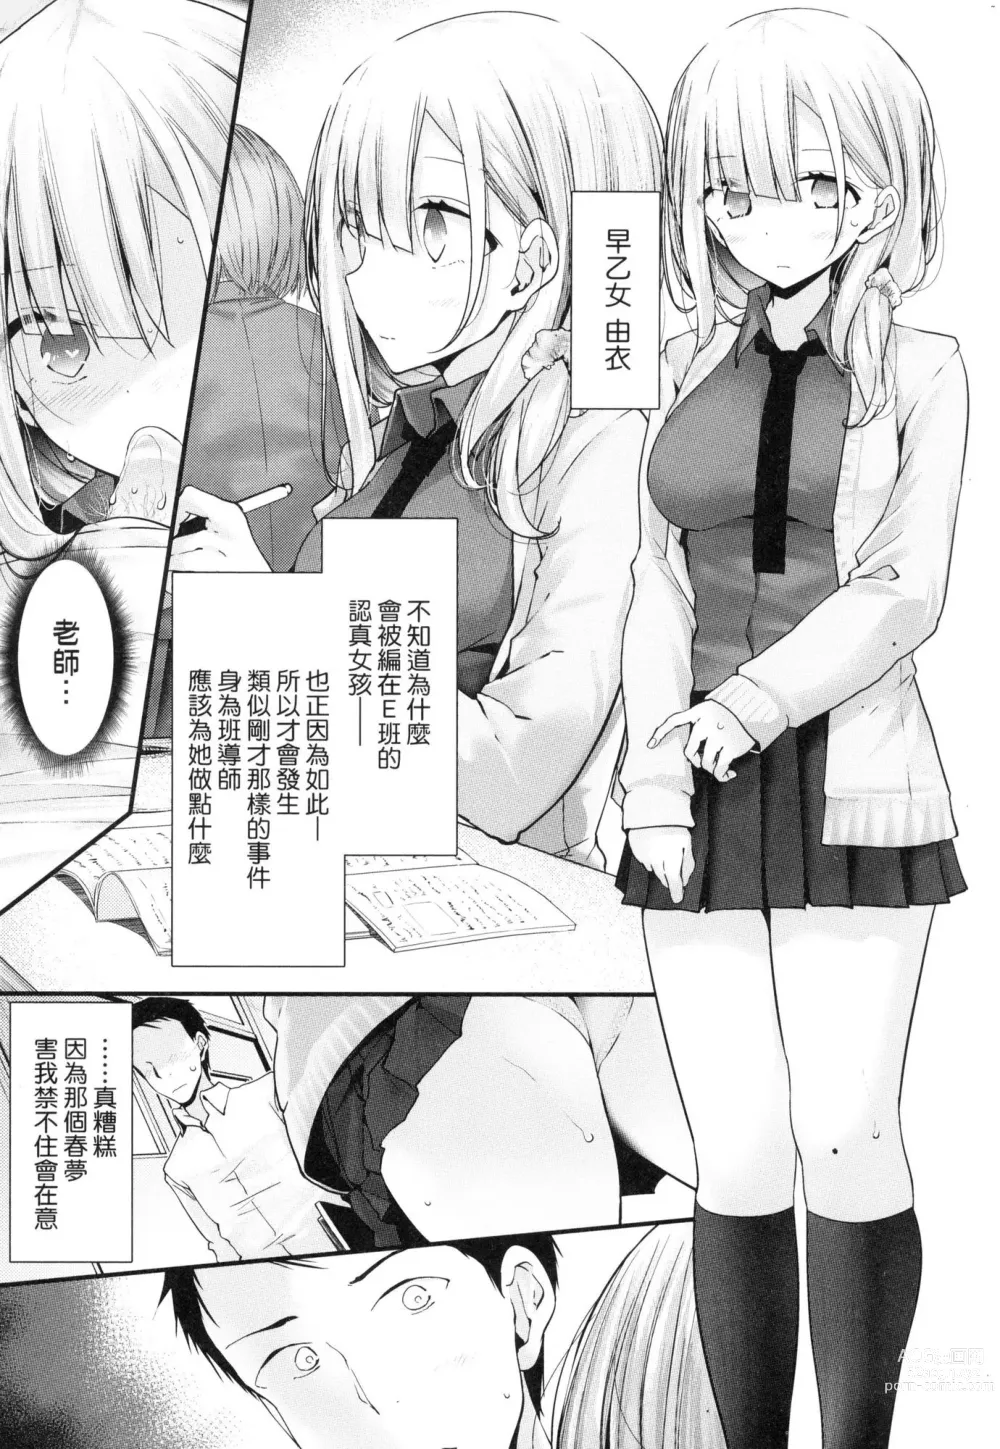 Page 11 of manga 自慰套教室-新學期- 女學生播種懲罰計畫 (decensored)